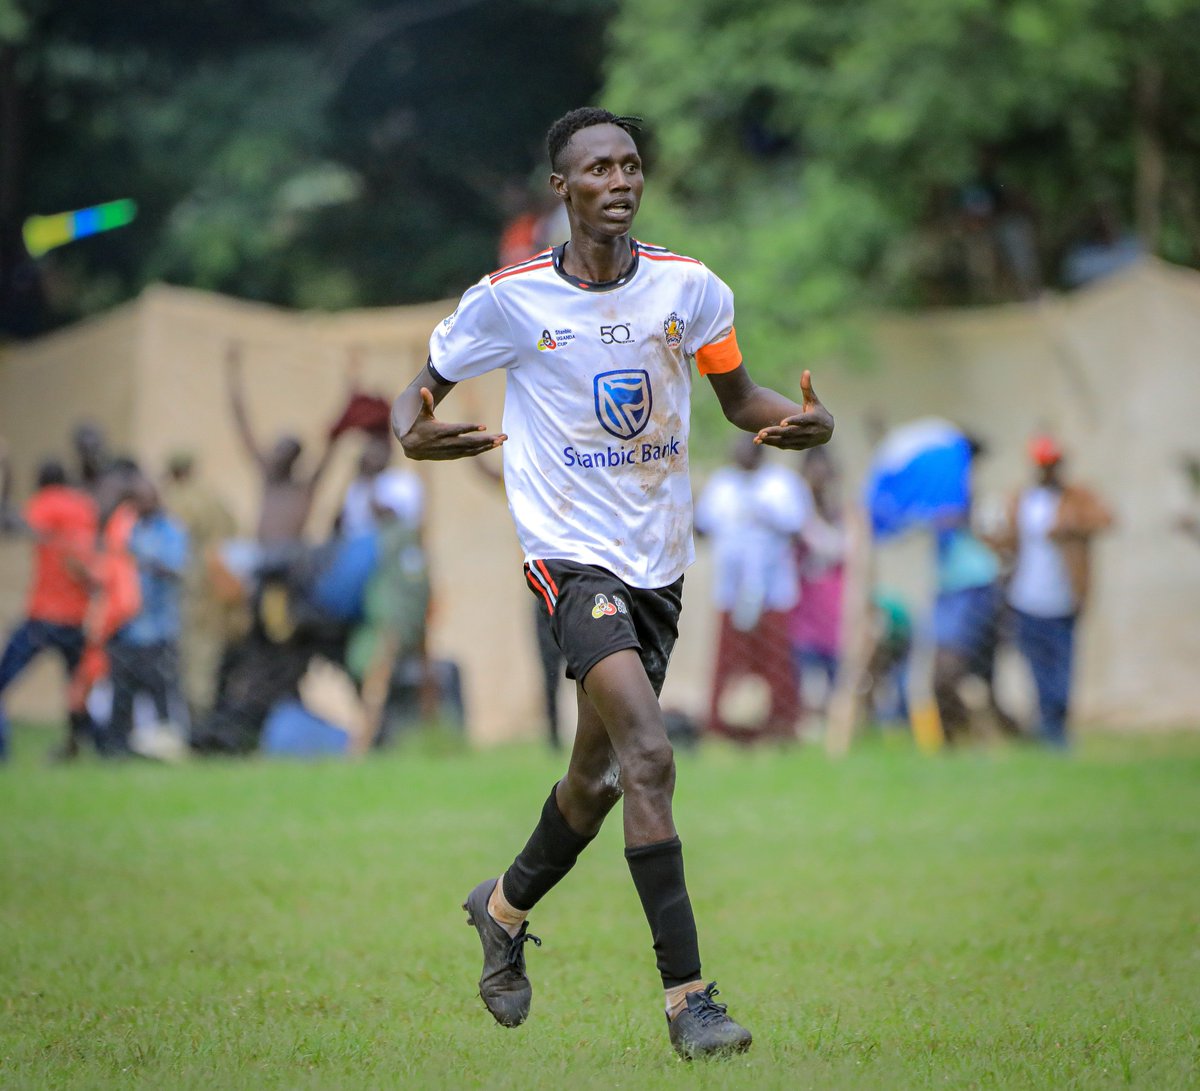 𝐅𝐔𝐋𝐋𝐓𝐈𝐌𝐄 Kitara FC 3 : 1 Pajule Lions FC ⚽ Solomon Okwalinga ⚽ Dennis Omedi ⚽ Frank Tumwesigye Zaga #StanbicUgandaCup